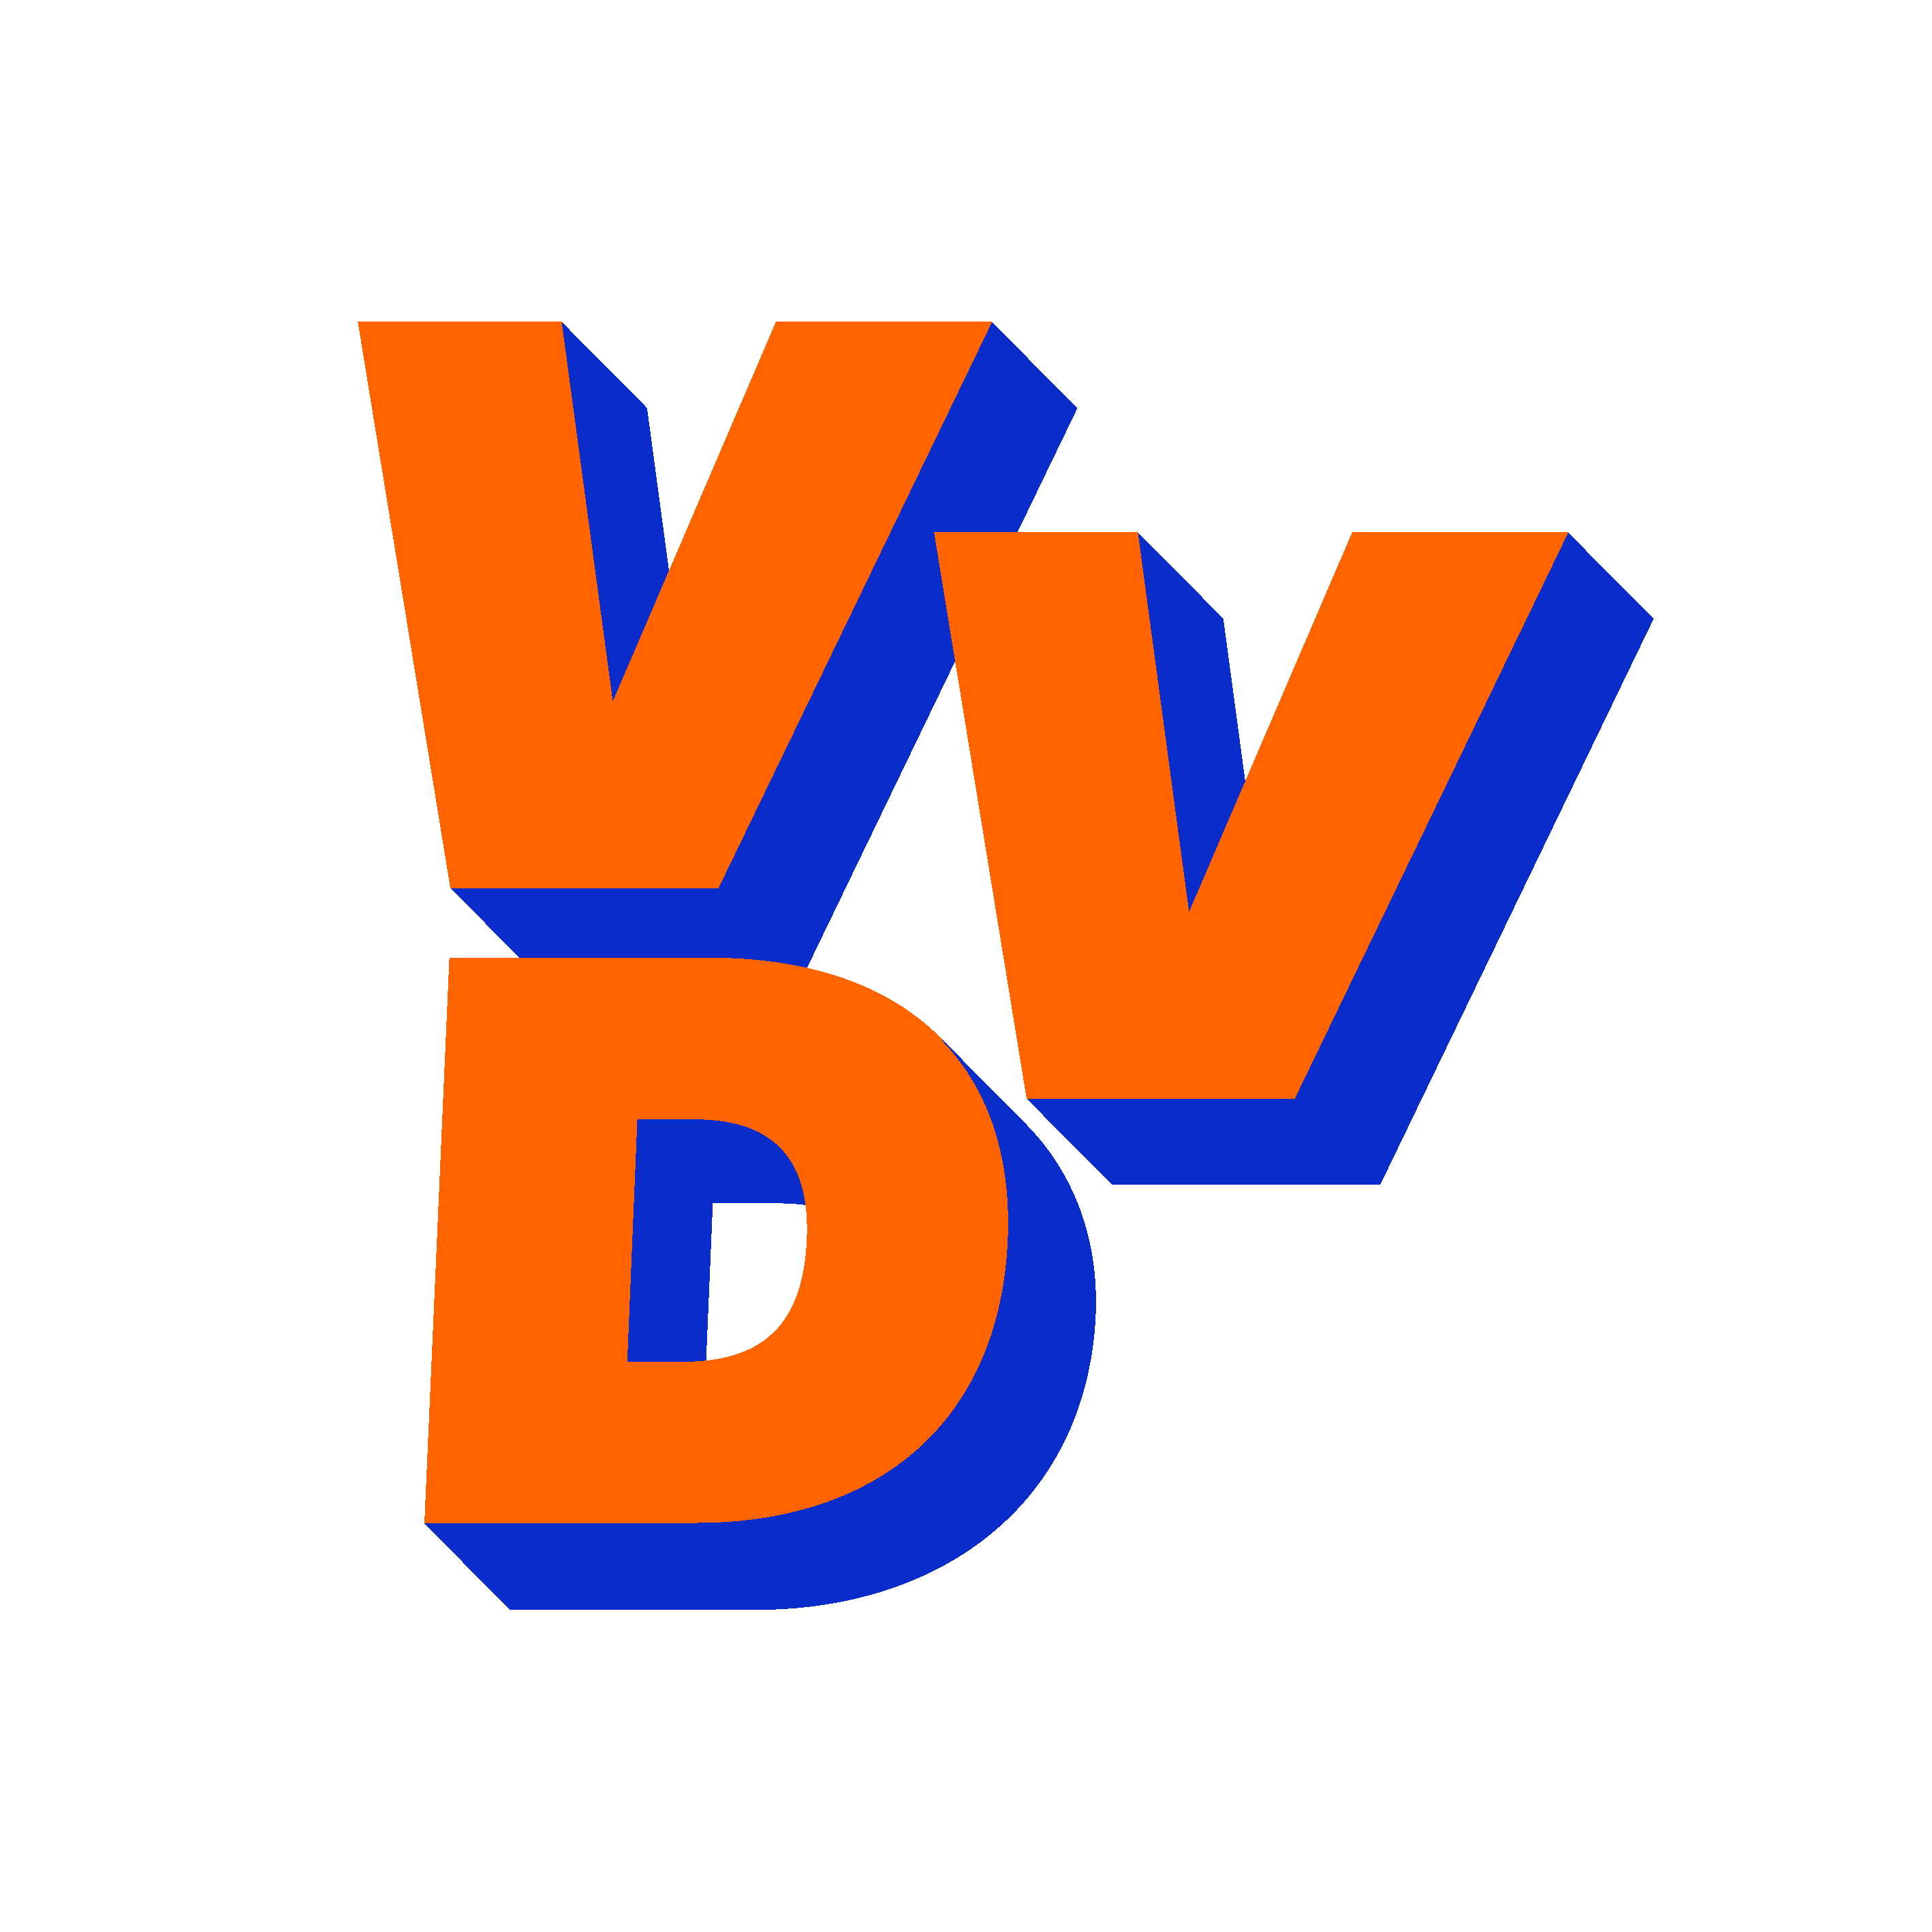 vvd-logo